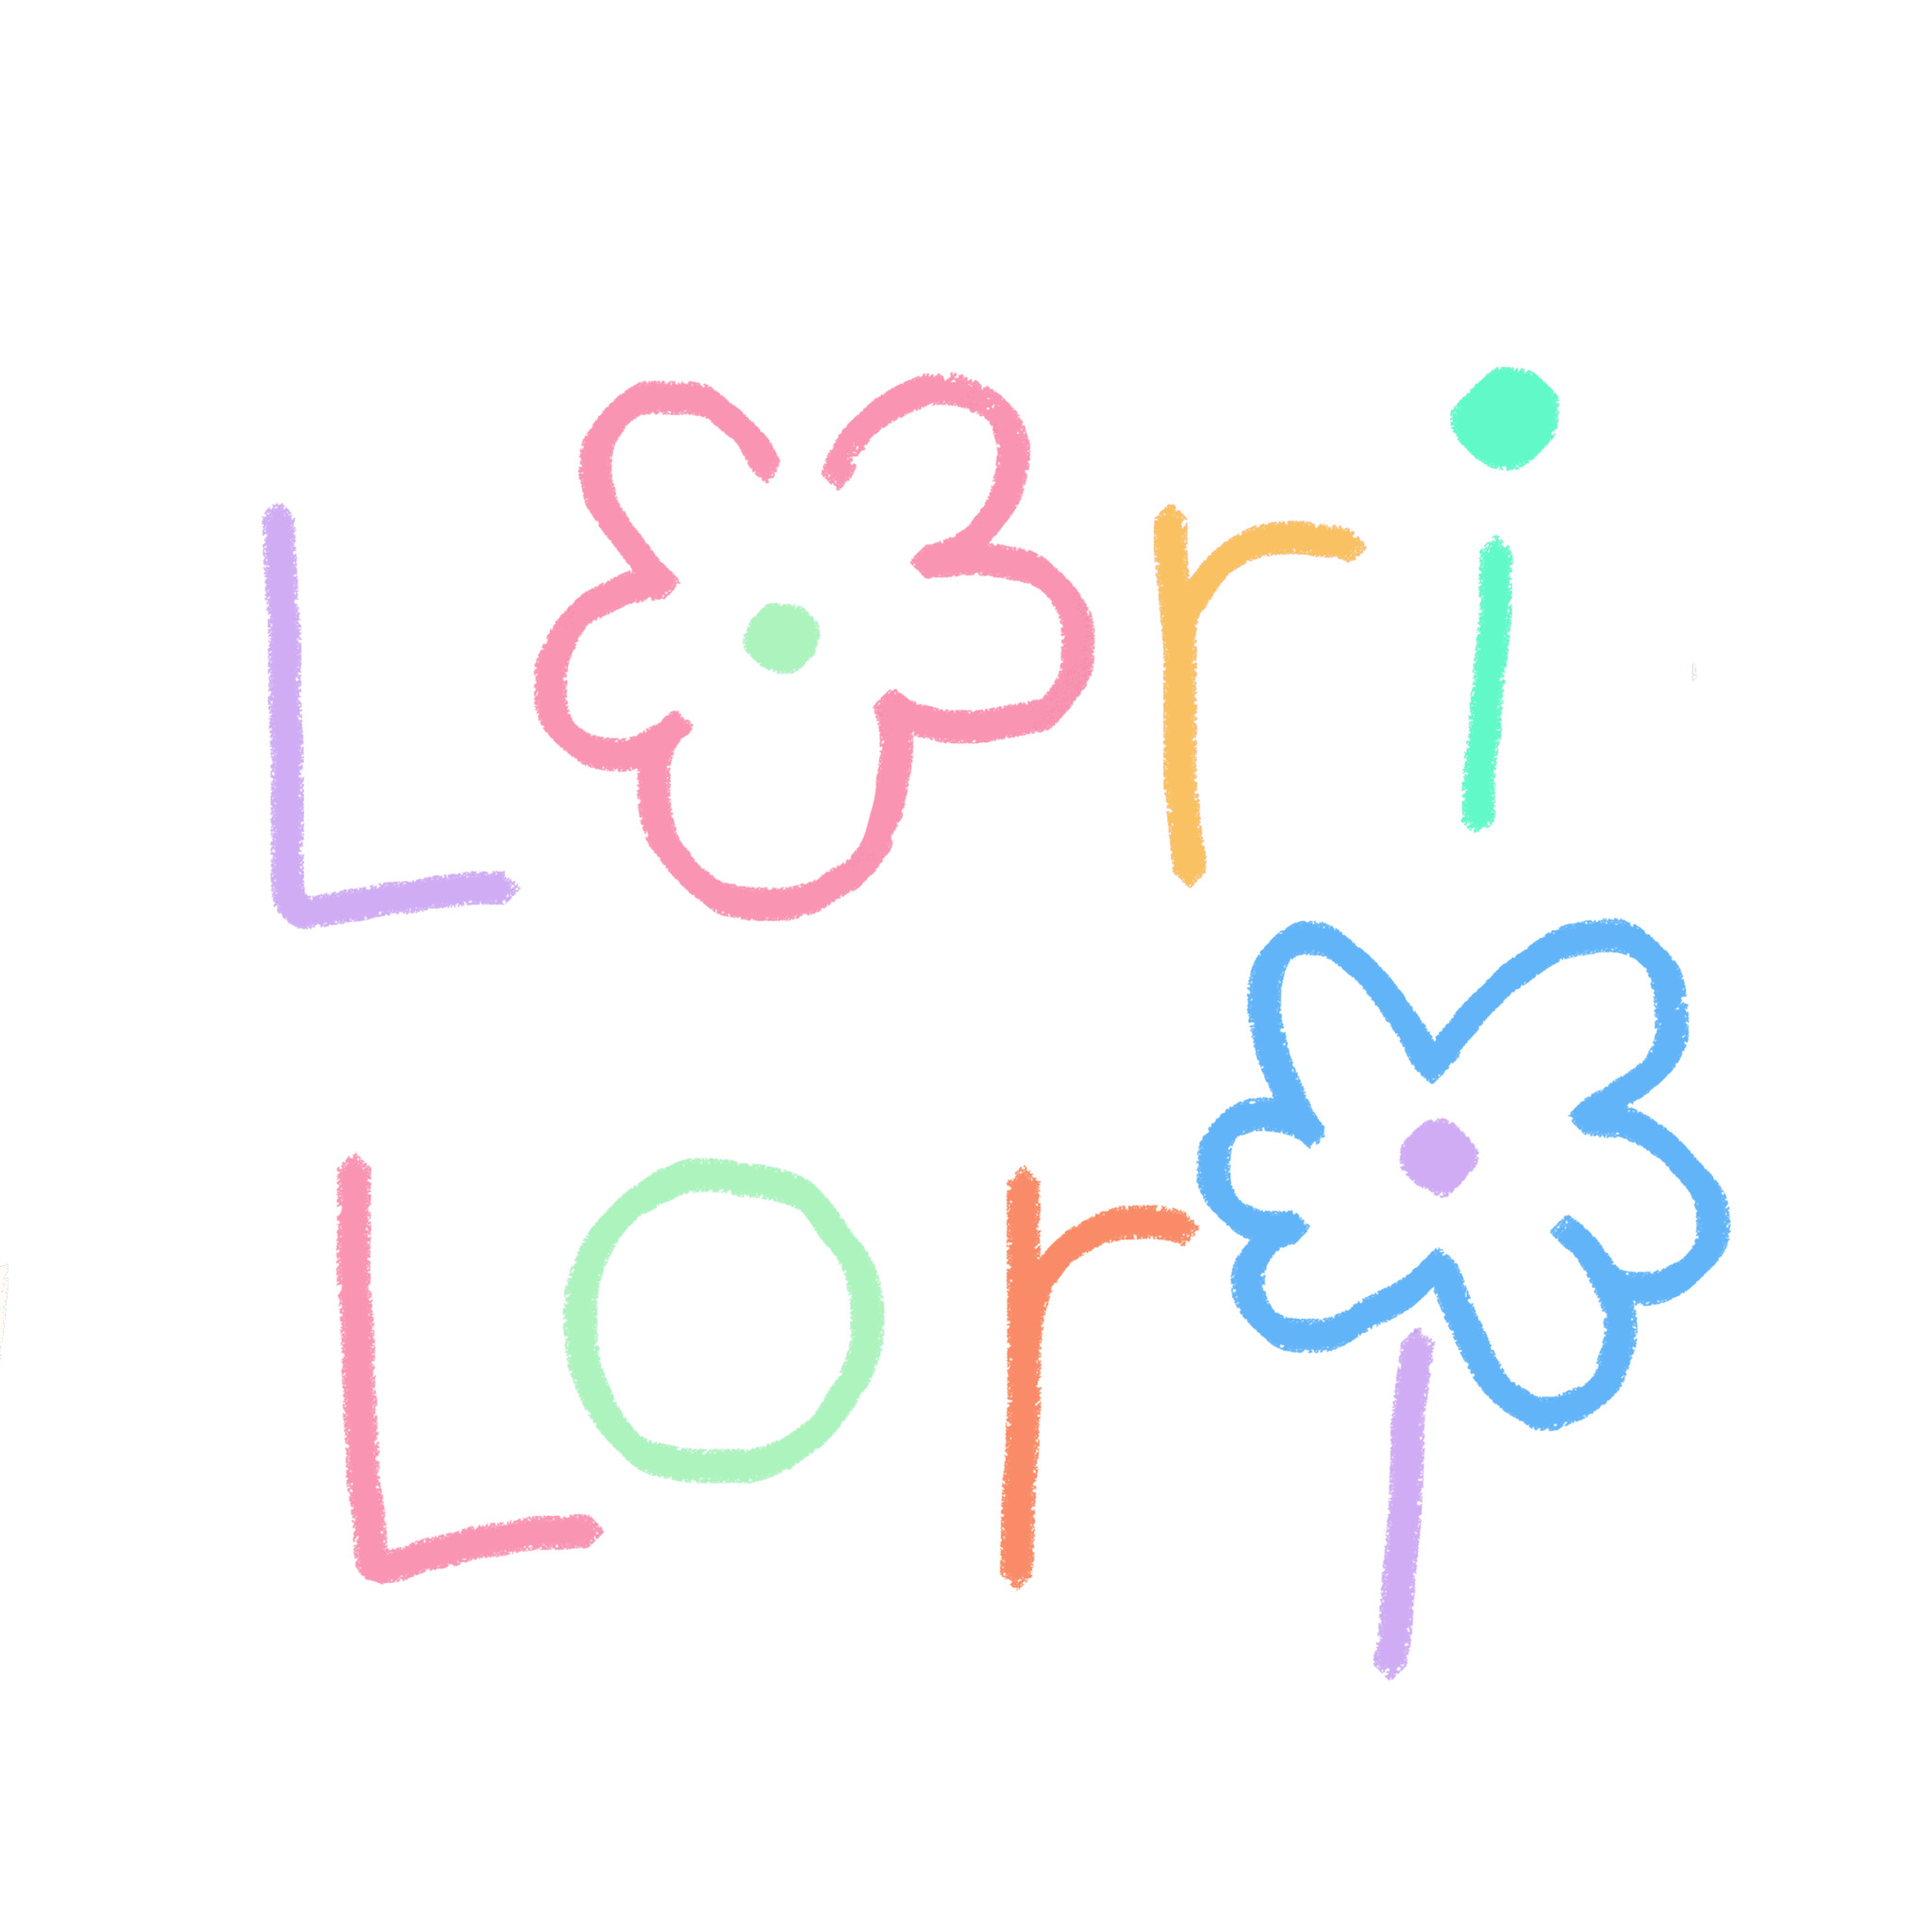 LORI-LORI